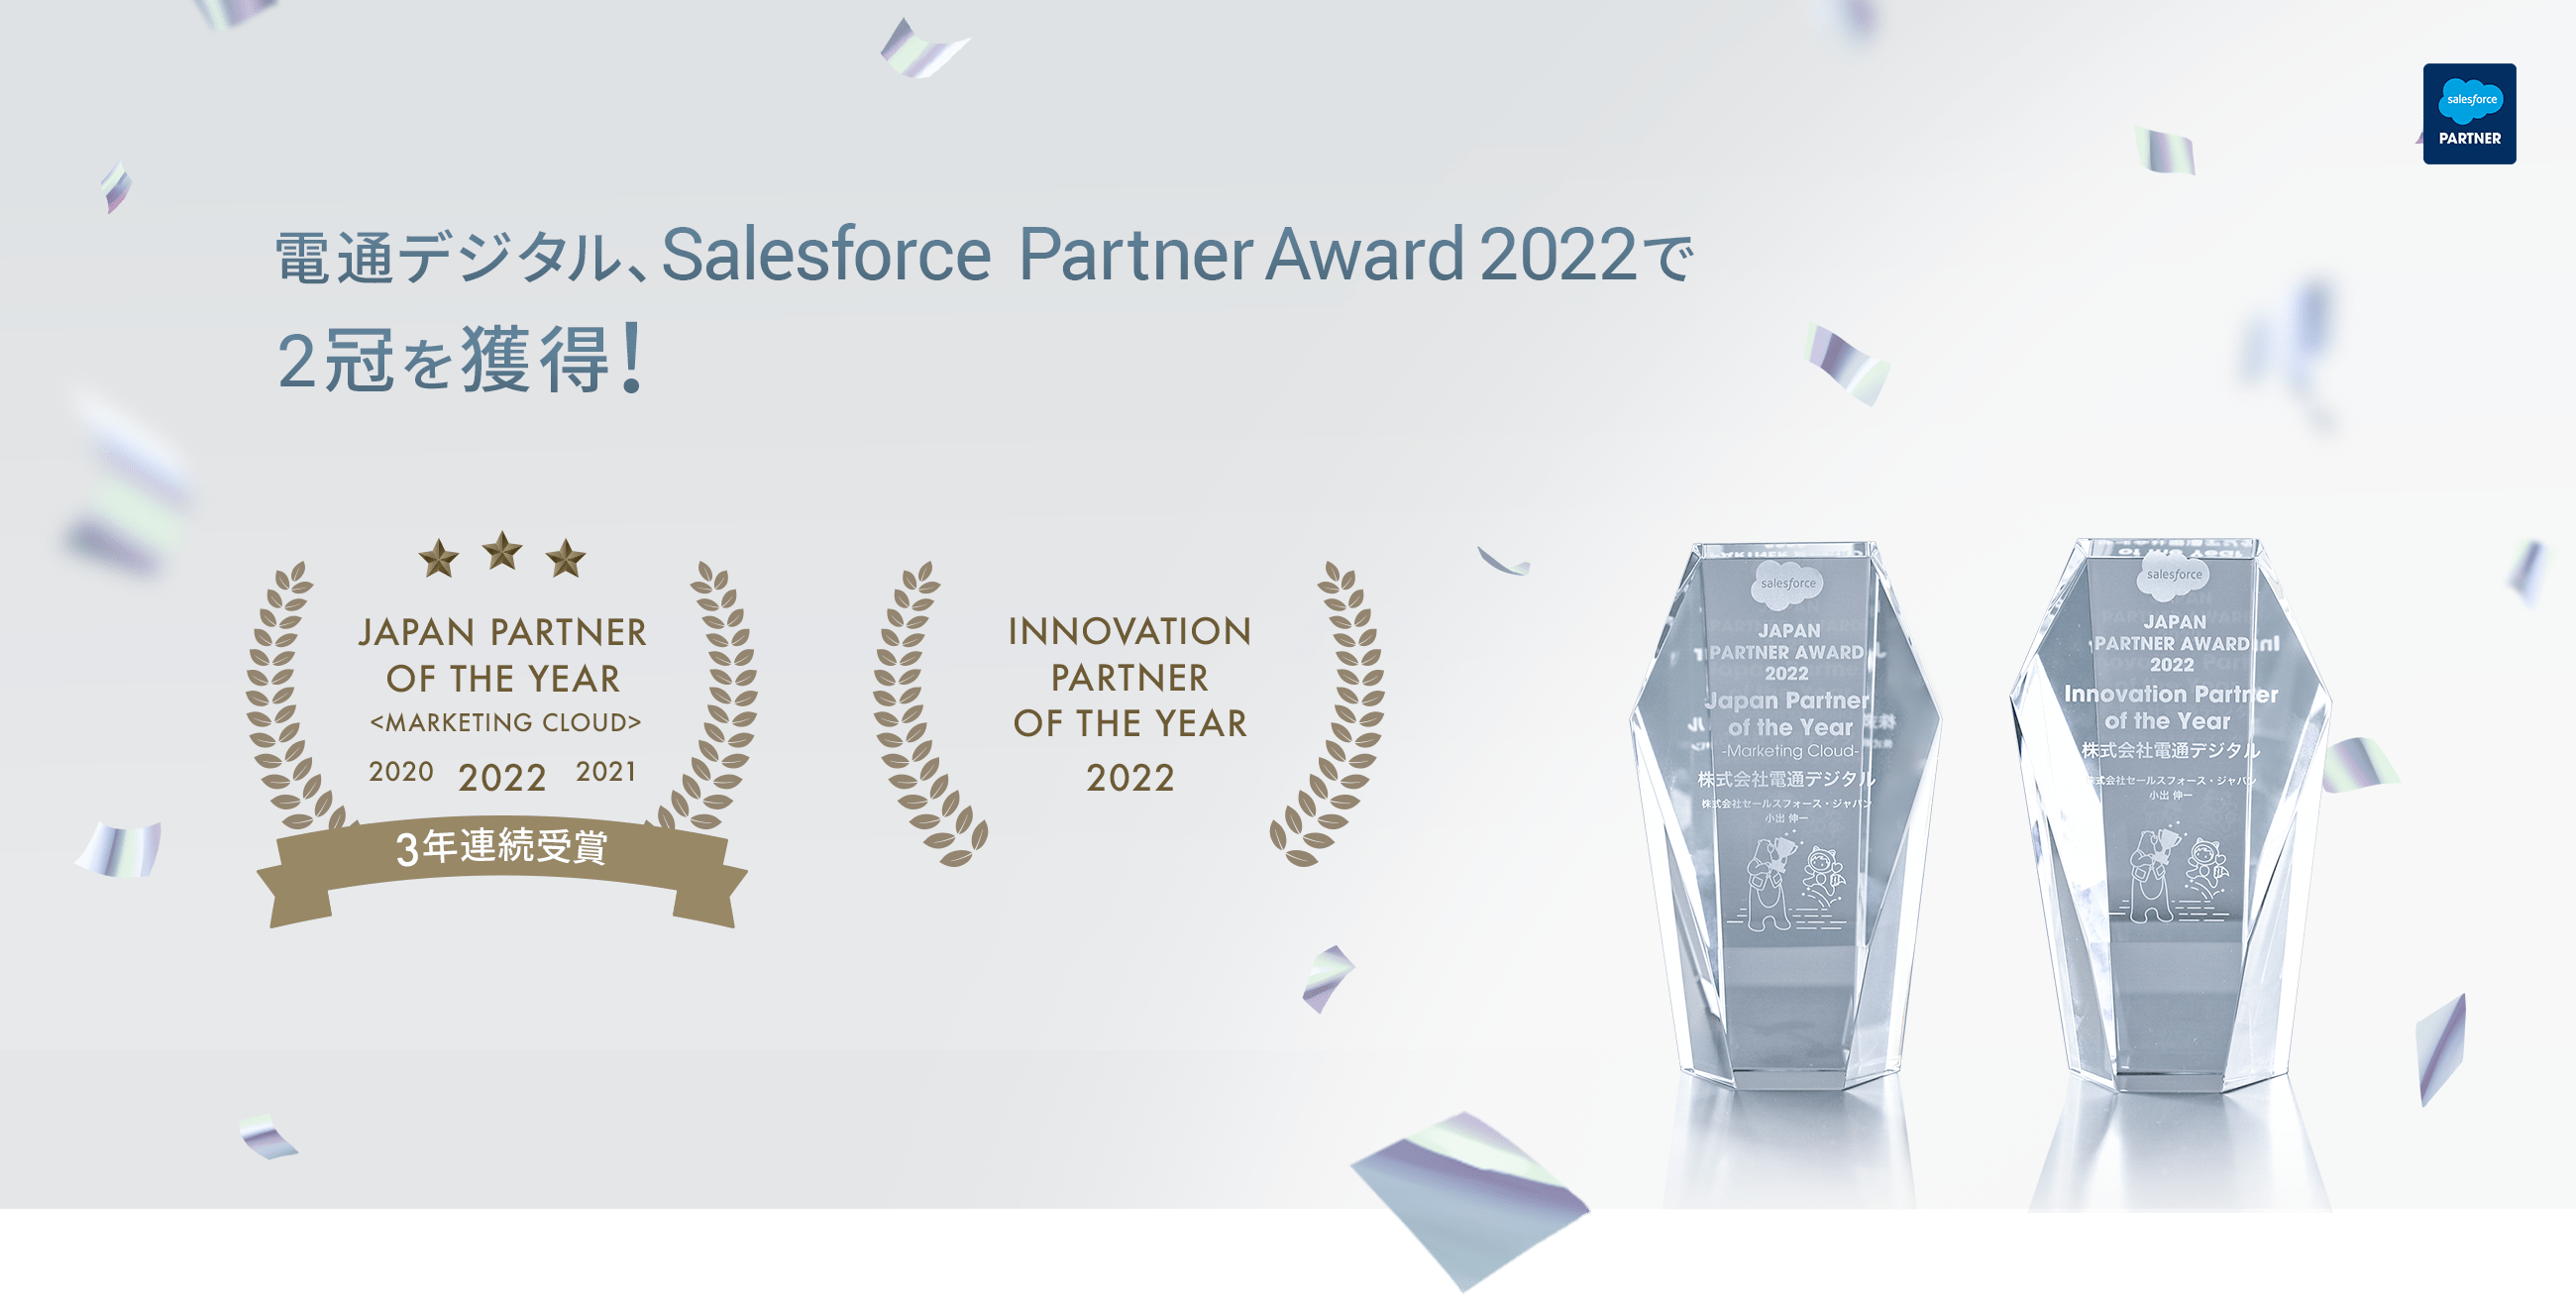 電通デジタル、Salesforce Partner Award 2022で2冠を獲得!